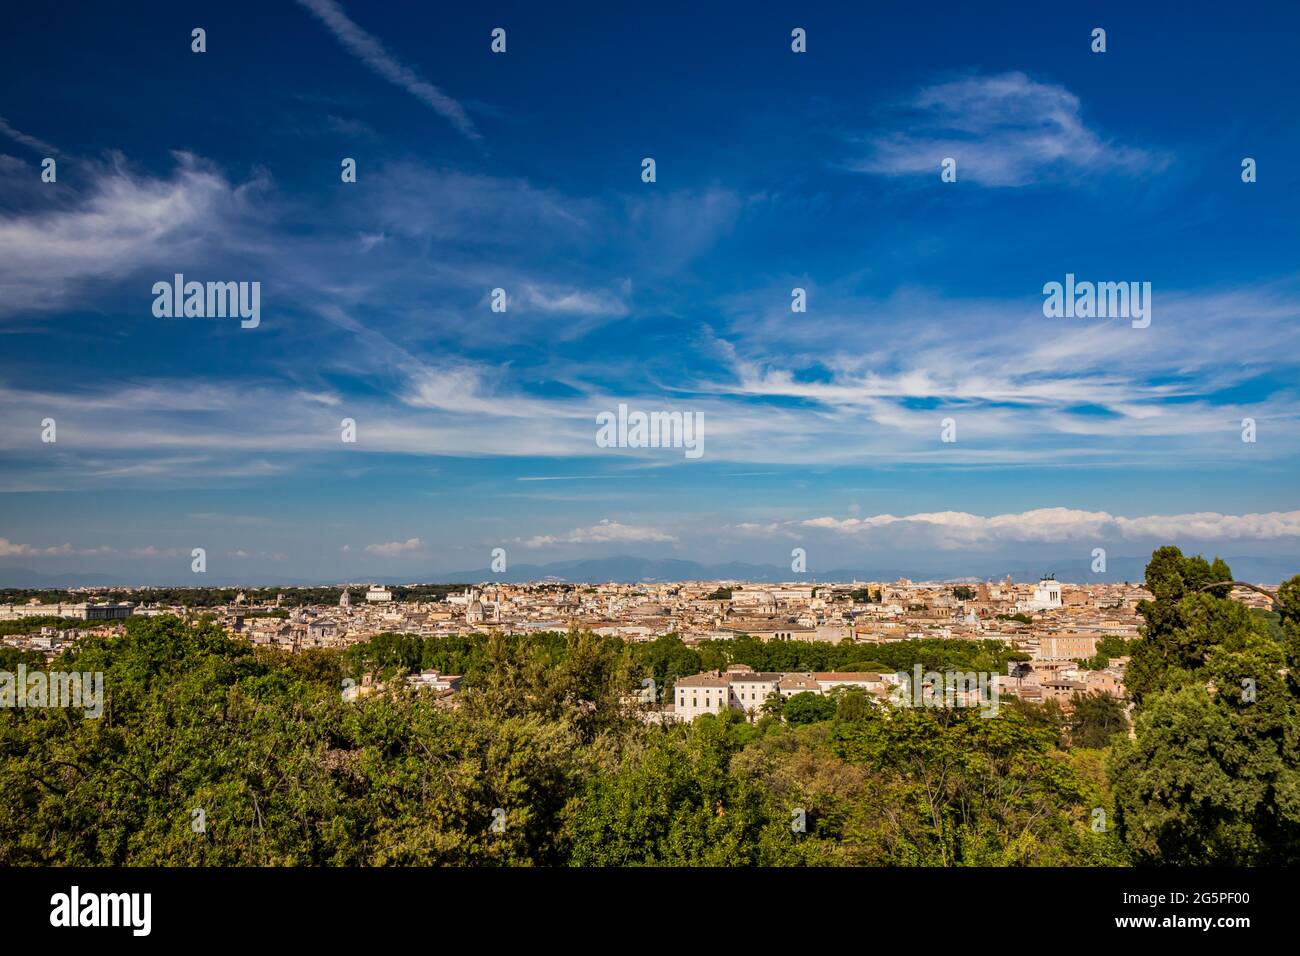 Roma, lazio, Italy - Il bellissimo panorama della città, visto dalla sommità del Gianicolo (Janiculum). La splendida vista degli edifici storici, dell Stock Photo